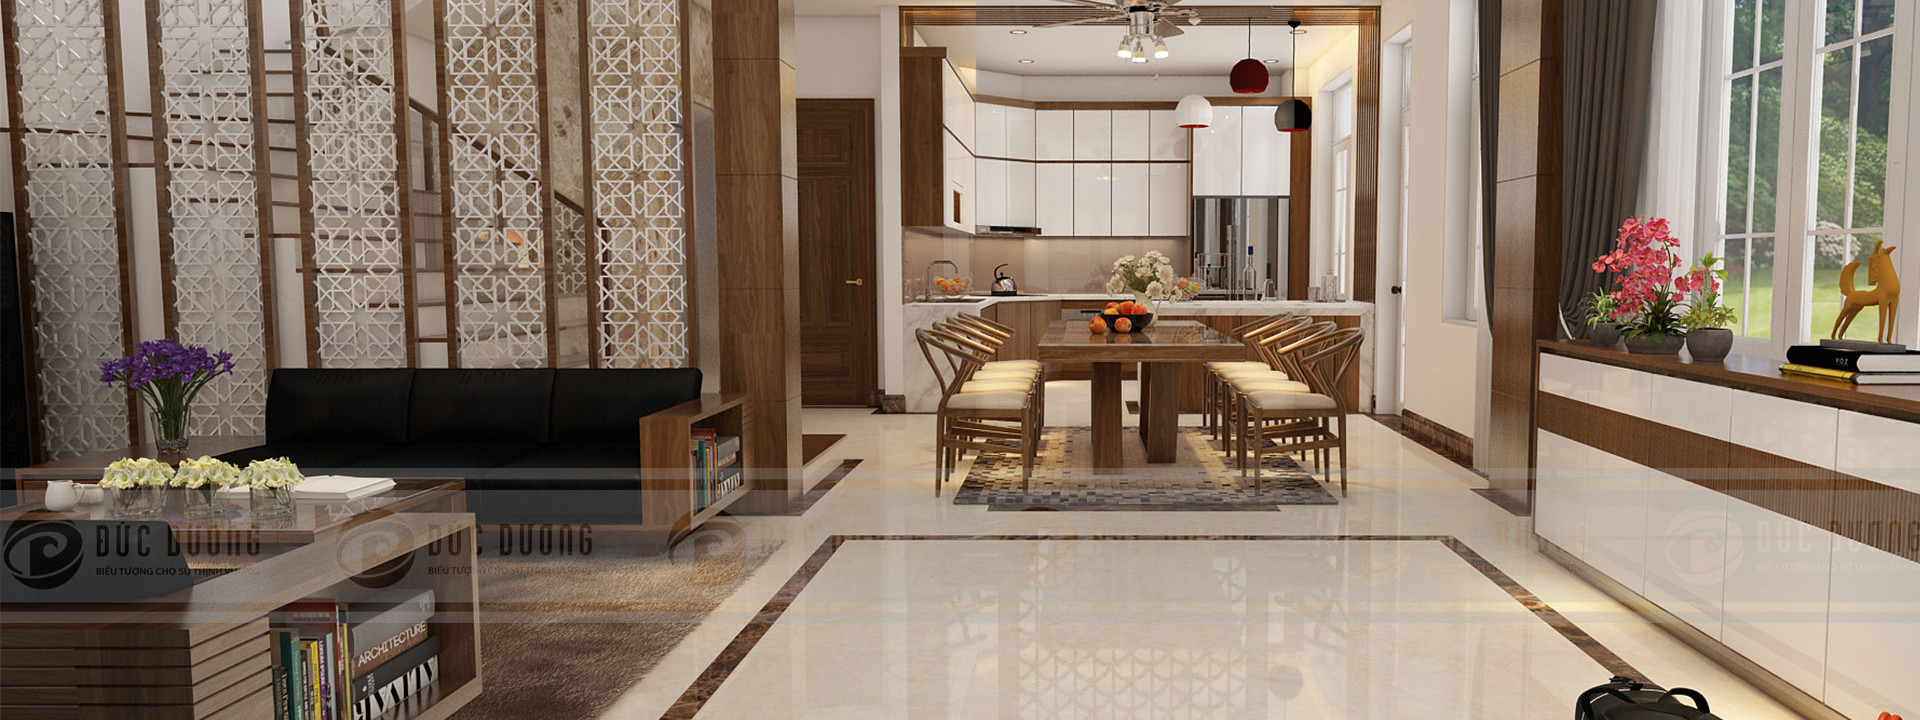 Thiết kế nội thất chung cư tại Hà Nội: Có nên thuê trọn gói?